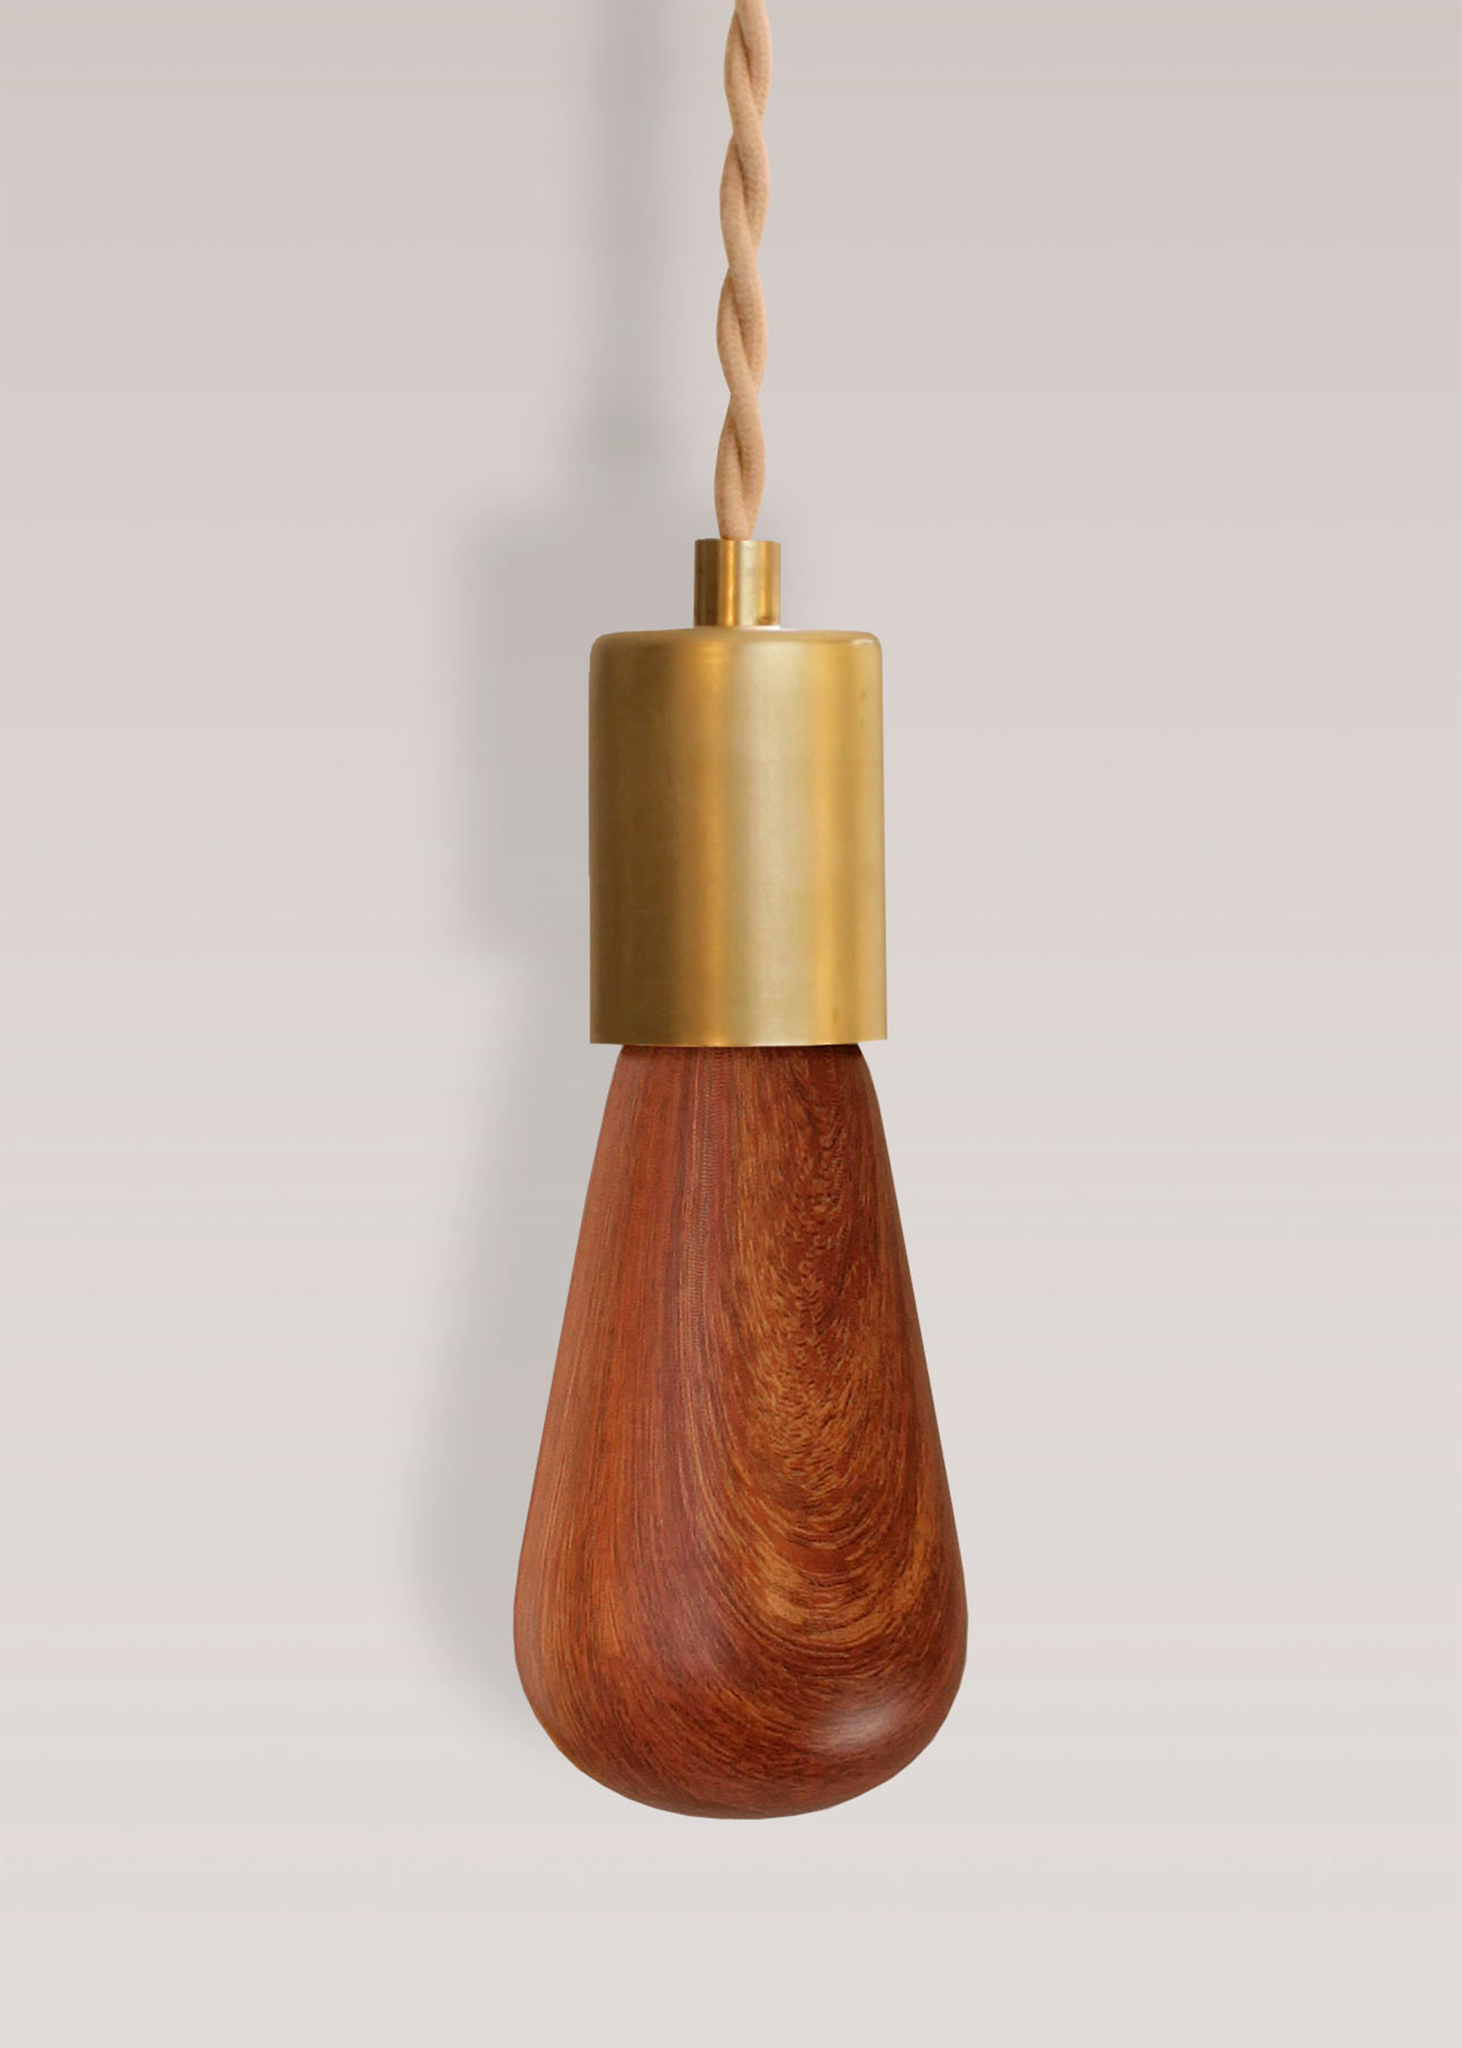 RELAMP Wood Grain LED Printed Light Bulb In Mahogany